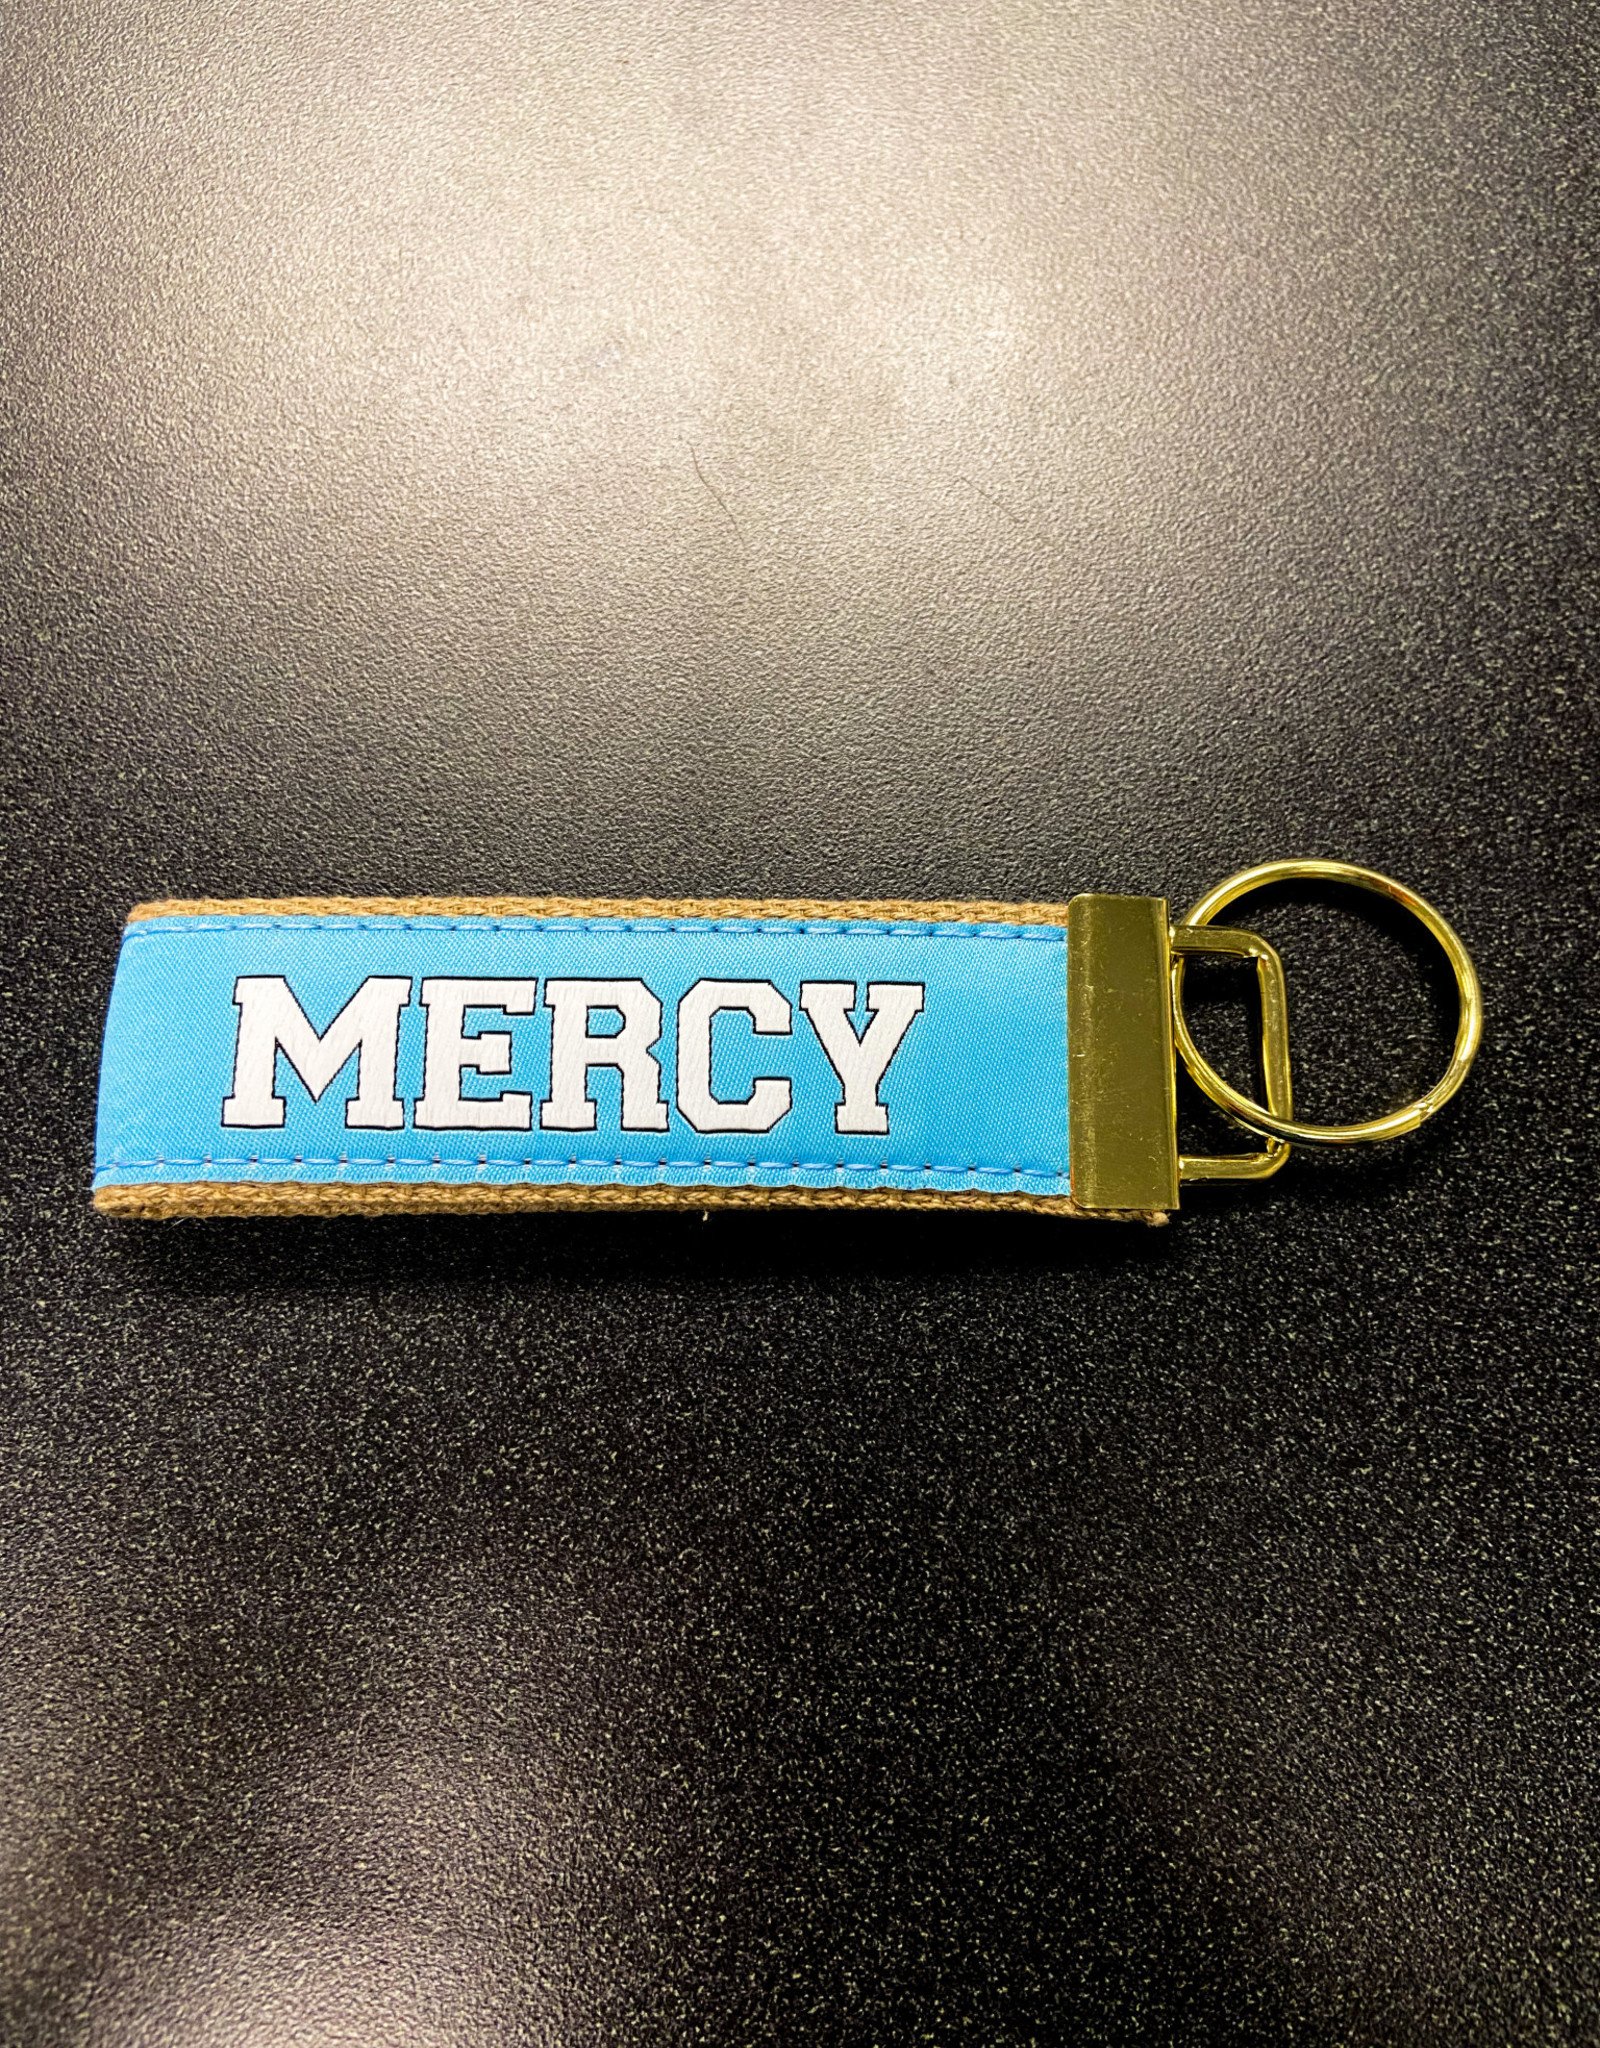 Jardine Associates Mercy Ribbon Keychain